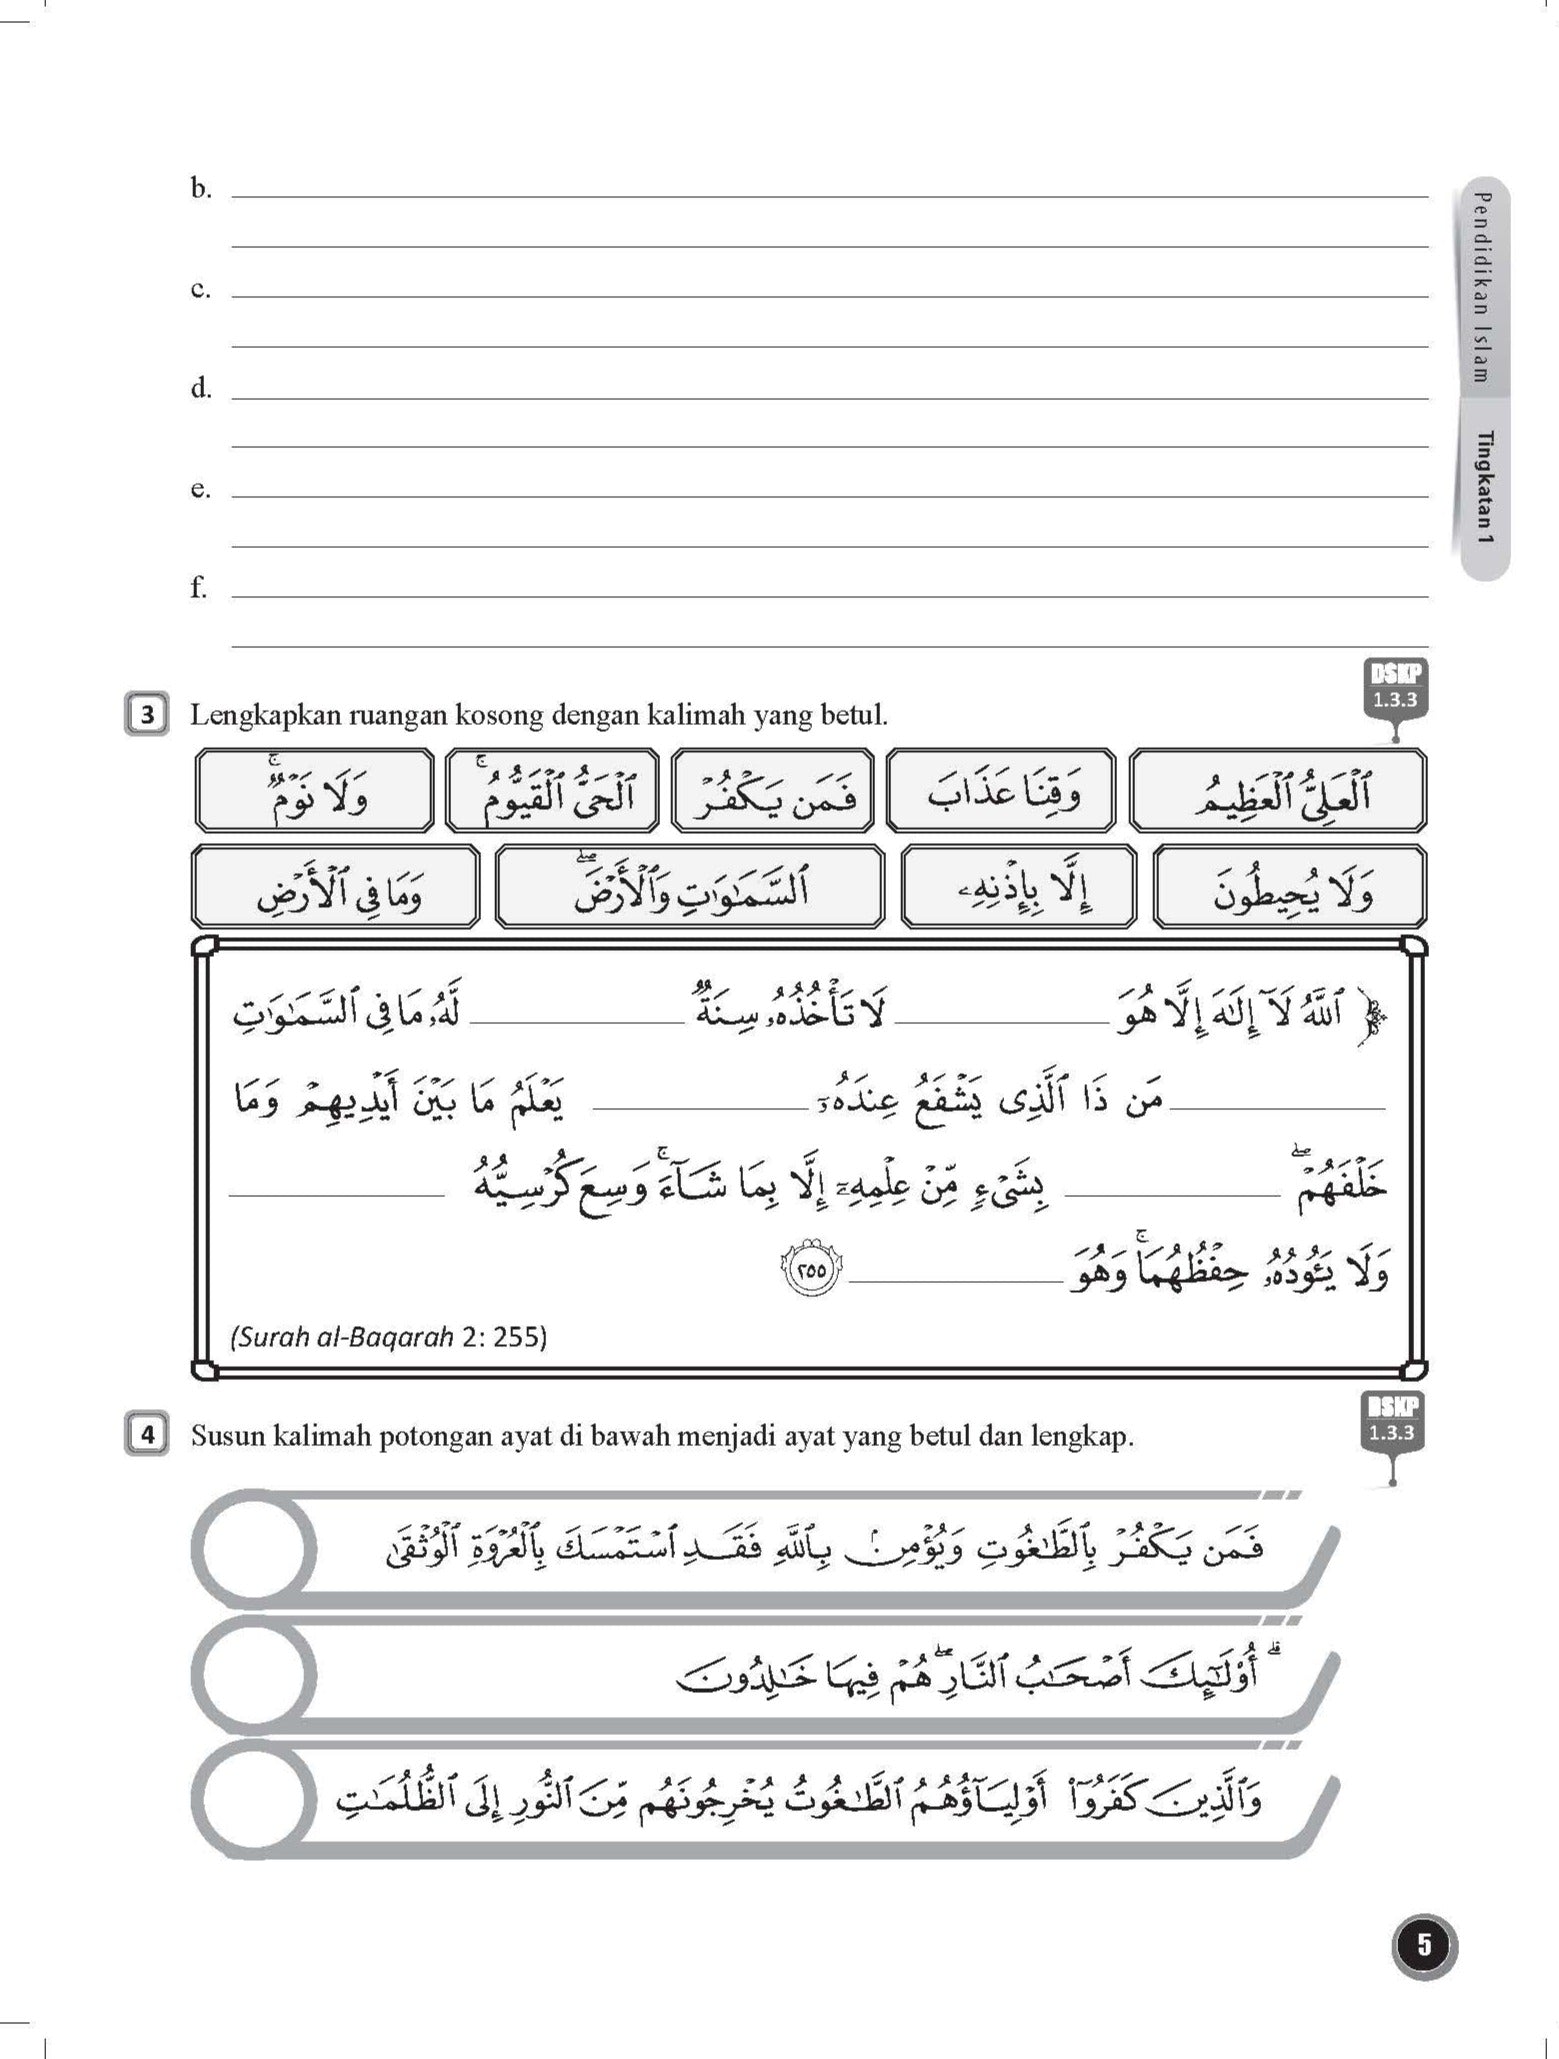 Maximum Practice PT3 Latihan Topikal Berstruktur Pendidikan Islam Tingkatan 1 - (TBBS1188)